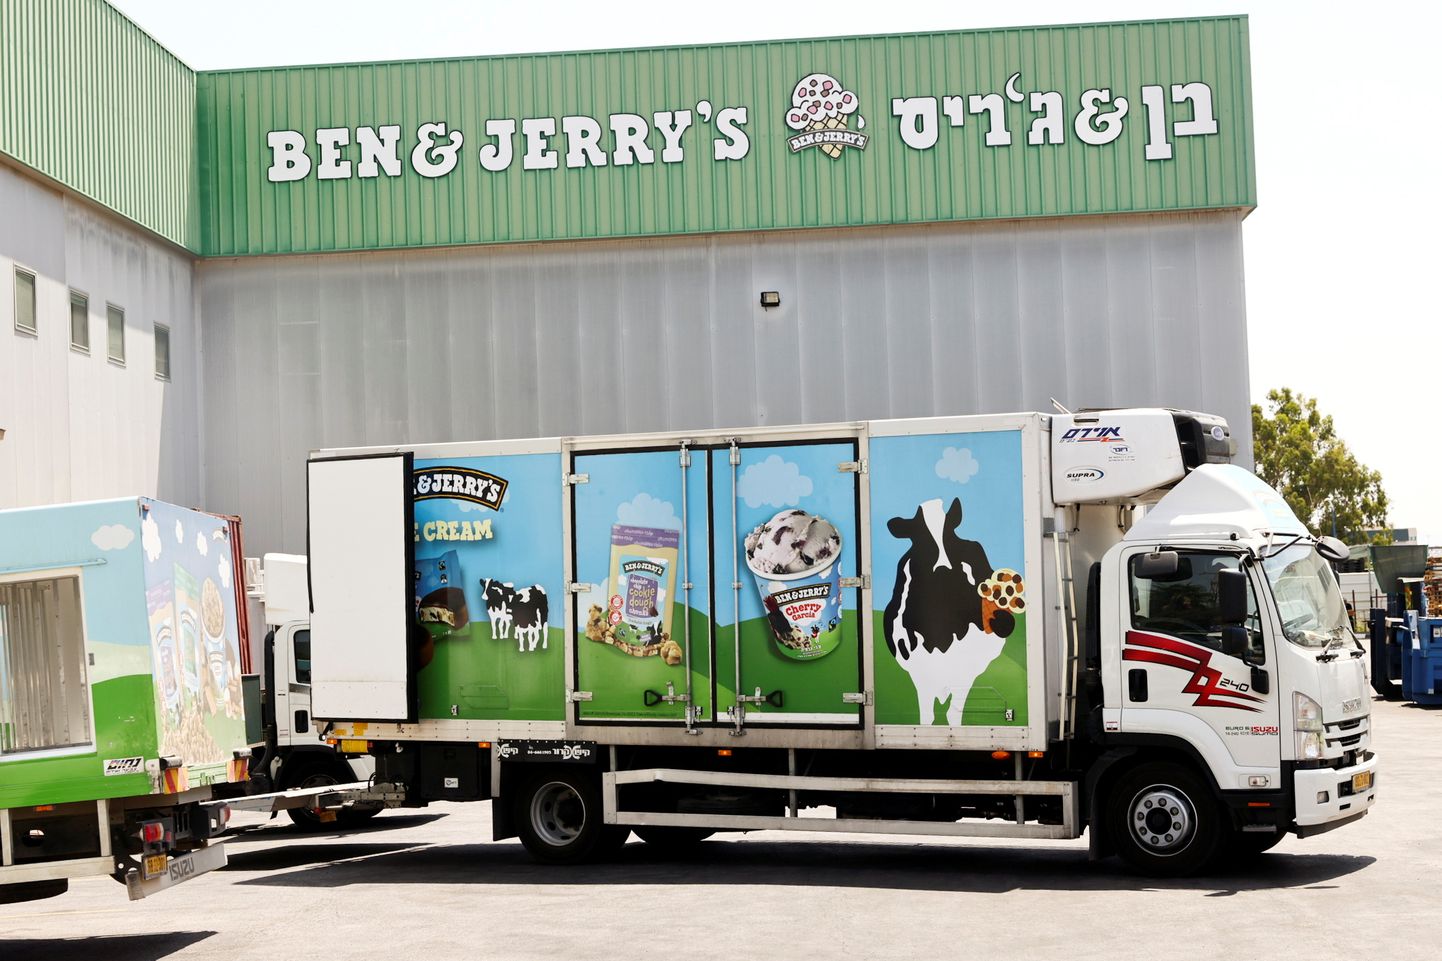 Ben & Jerry'se jäätiseauto ettevõtte tehase juures Iisraelis Be er Tuvias.